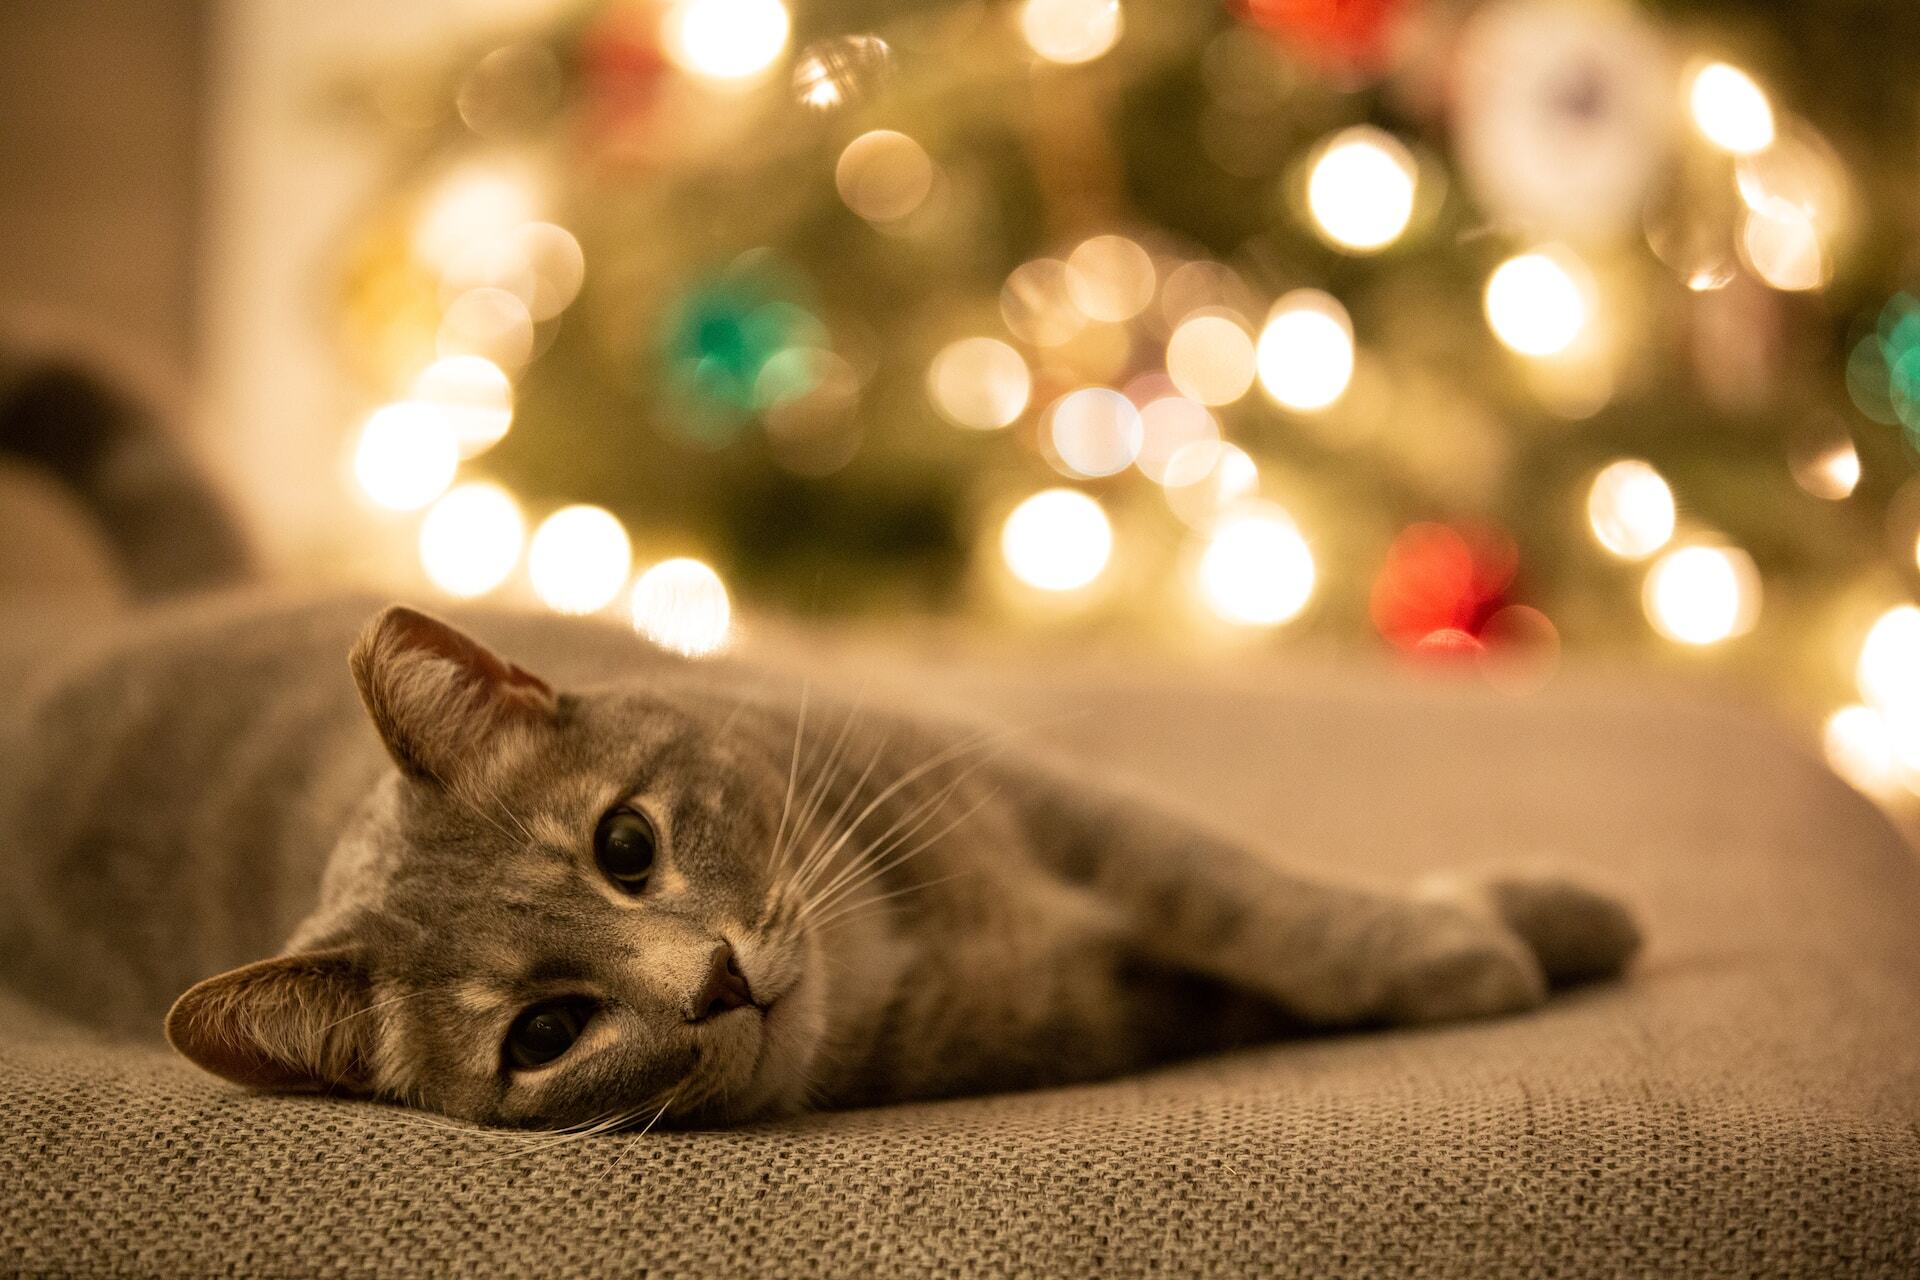 Katze schläft auf einer Bank neben einem Weihnachtsbaum